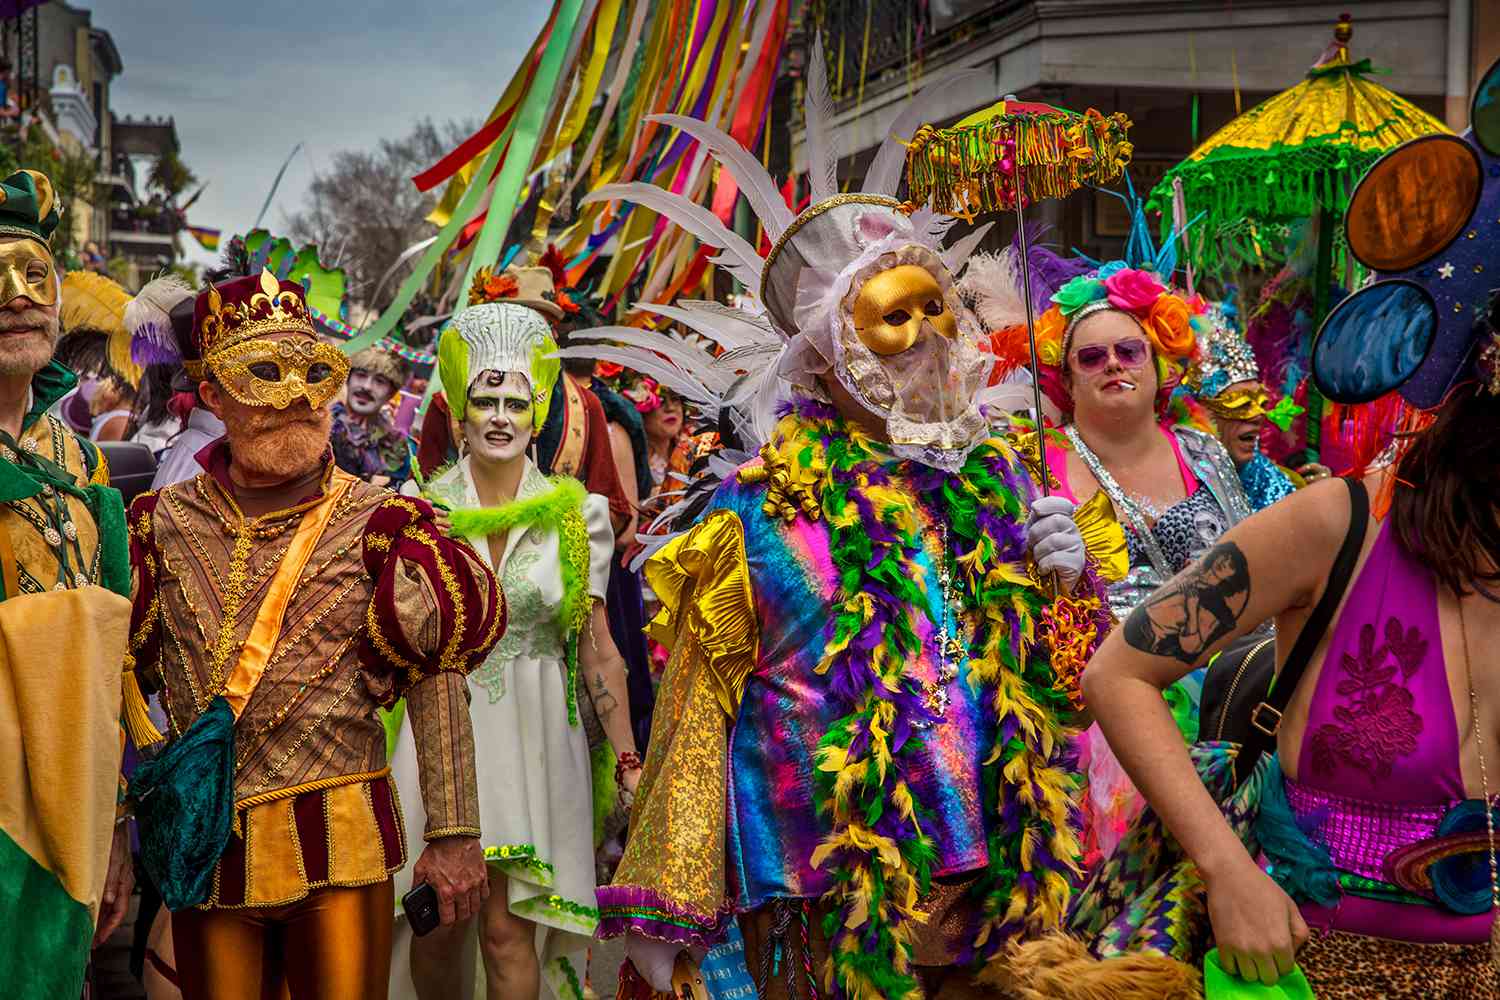 Mardi Gras comes to Jamaica next February